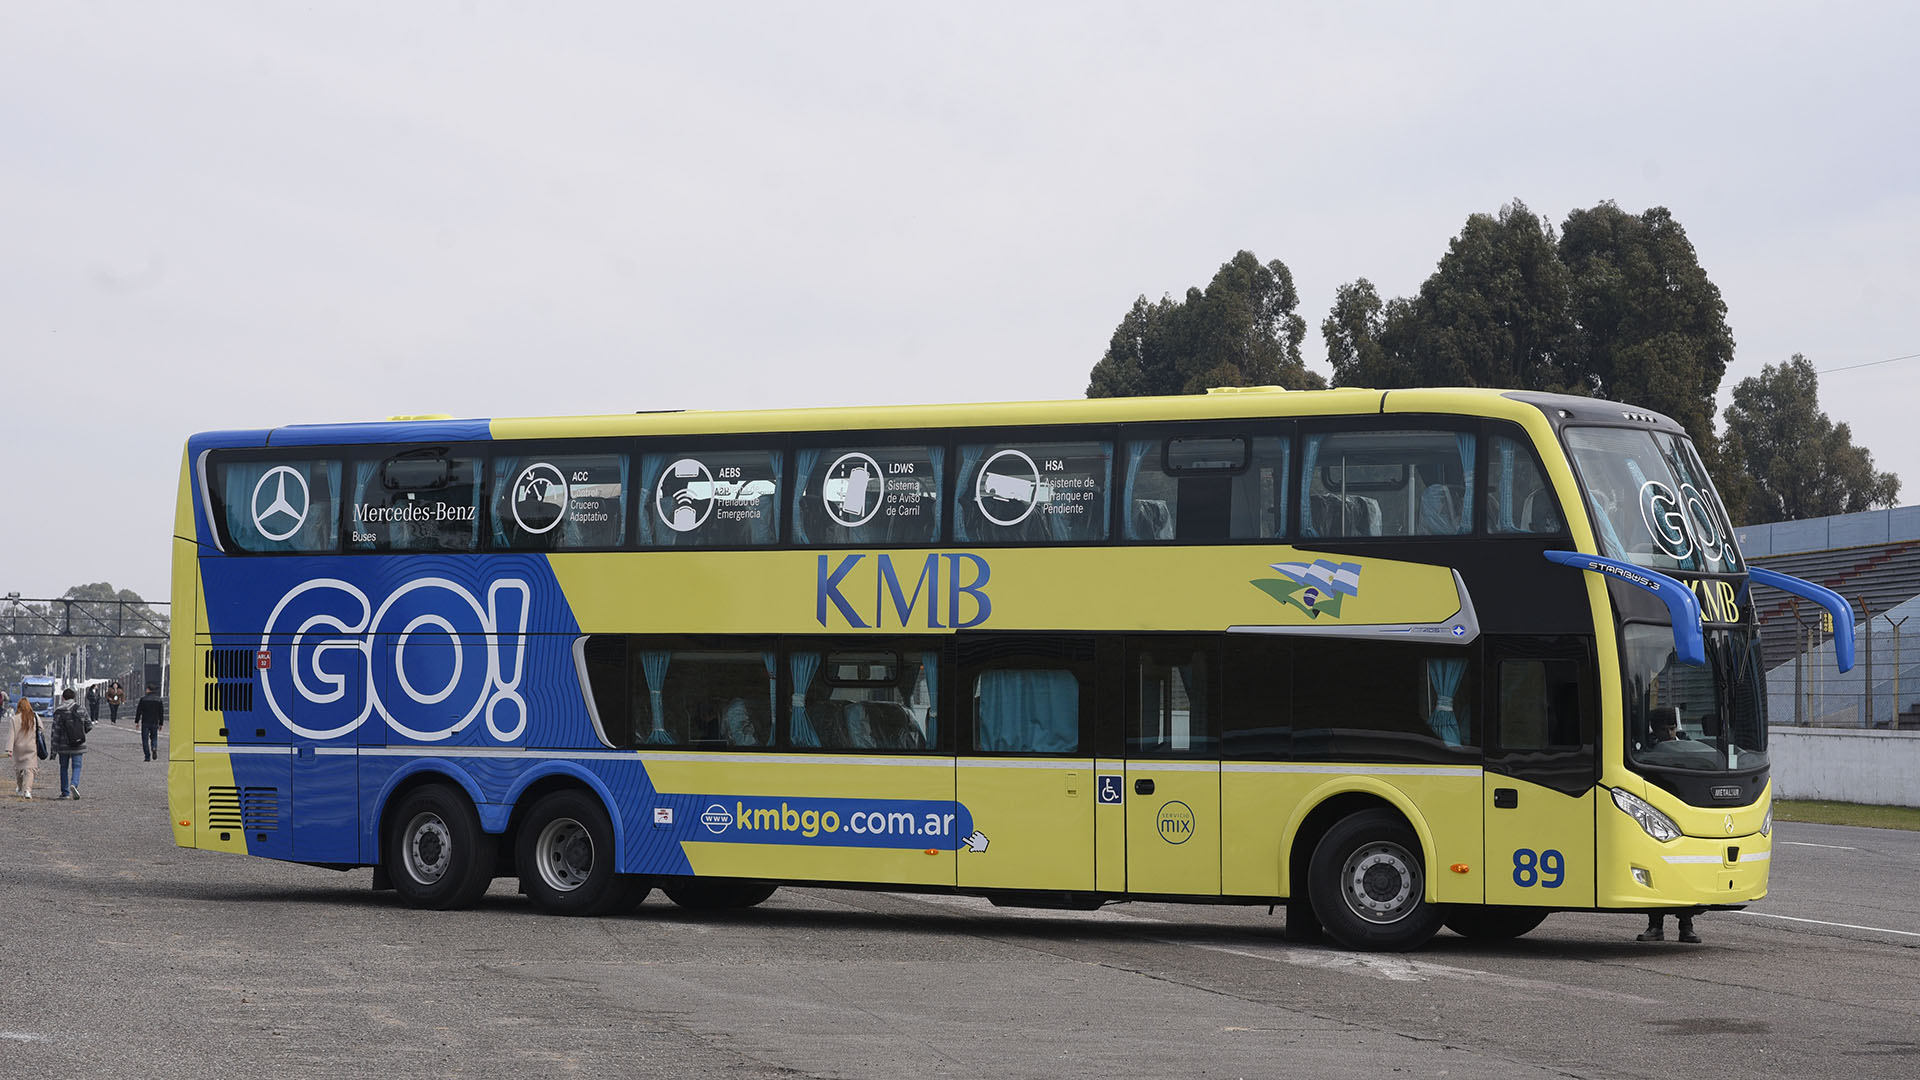 El bus O500 RSD 2441 con el nuevo equipamiento de seguridad que incorporó la automotriz. (Crédito: Mercedes-Benz Camiones y Buses)